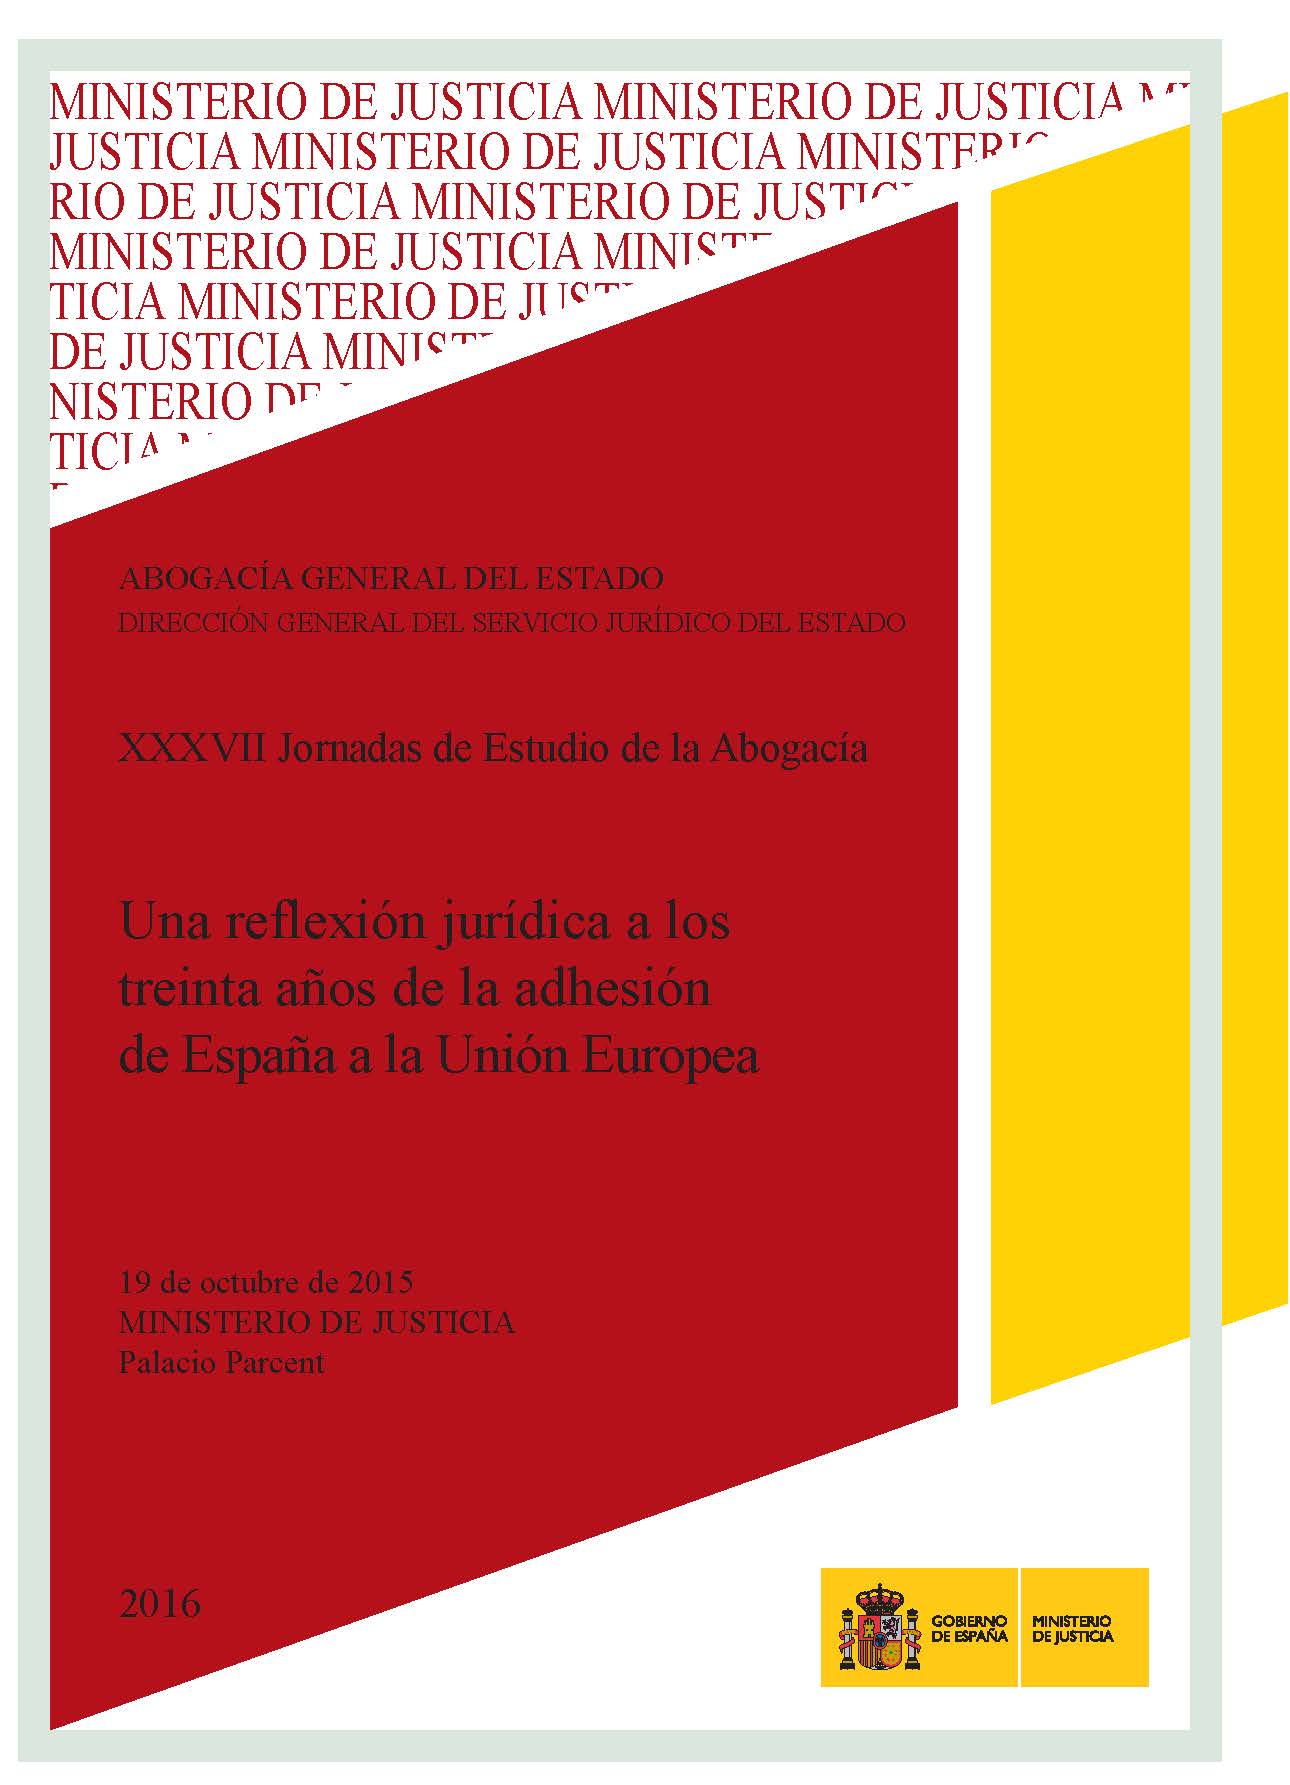 View details of XXXVII Jornadas de Estudio de la Abogacía. Una reflexión jurídica a los treinta años de la adhesión de España a la UE, 2016